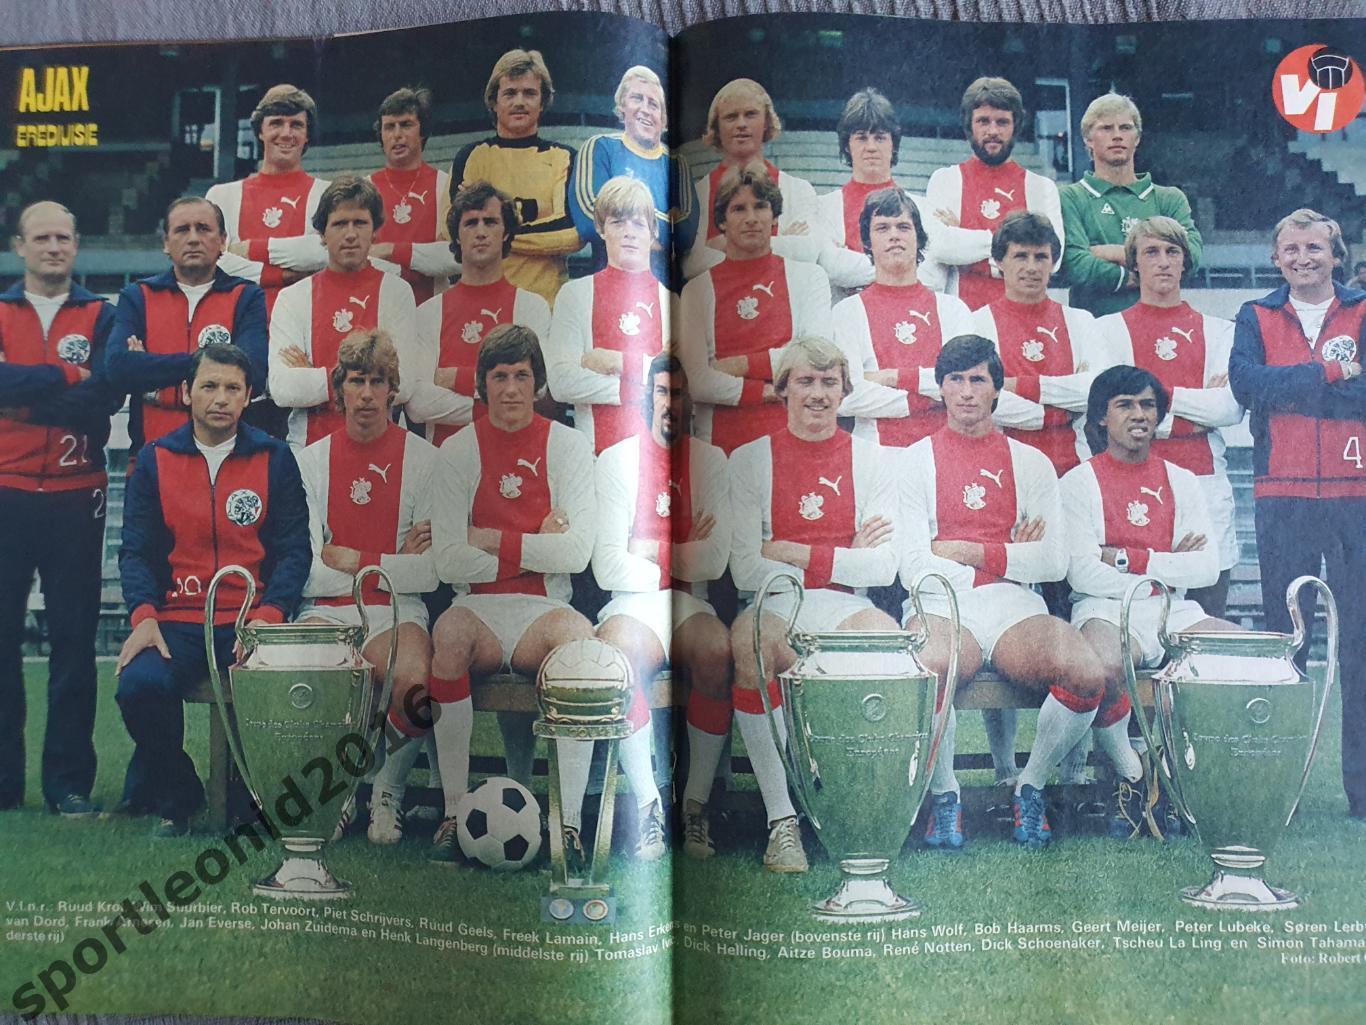 Voetbal International 1977 51 выпуск годовая подписка .Обобщённый). 4